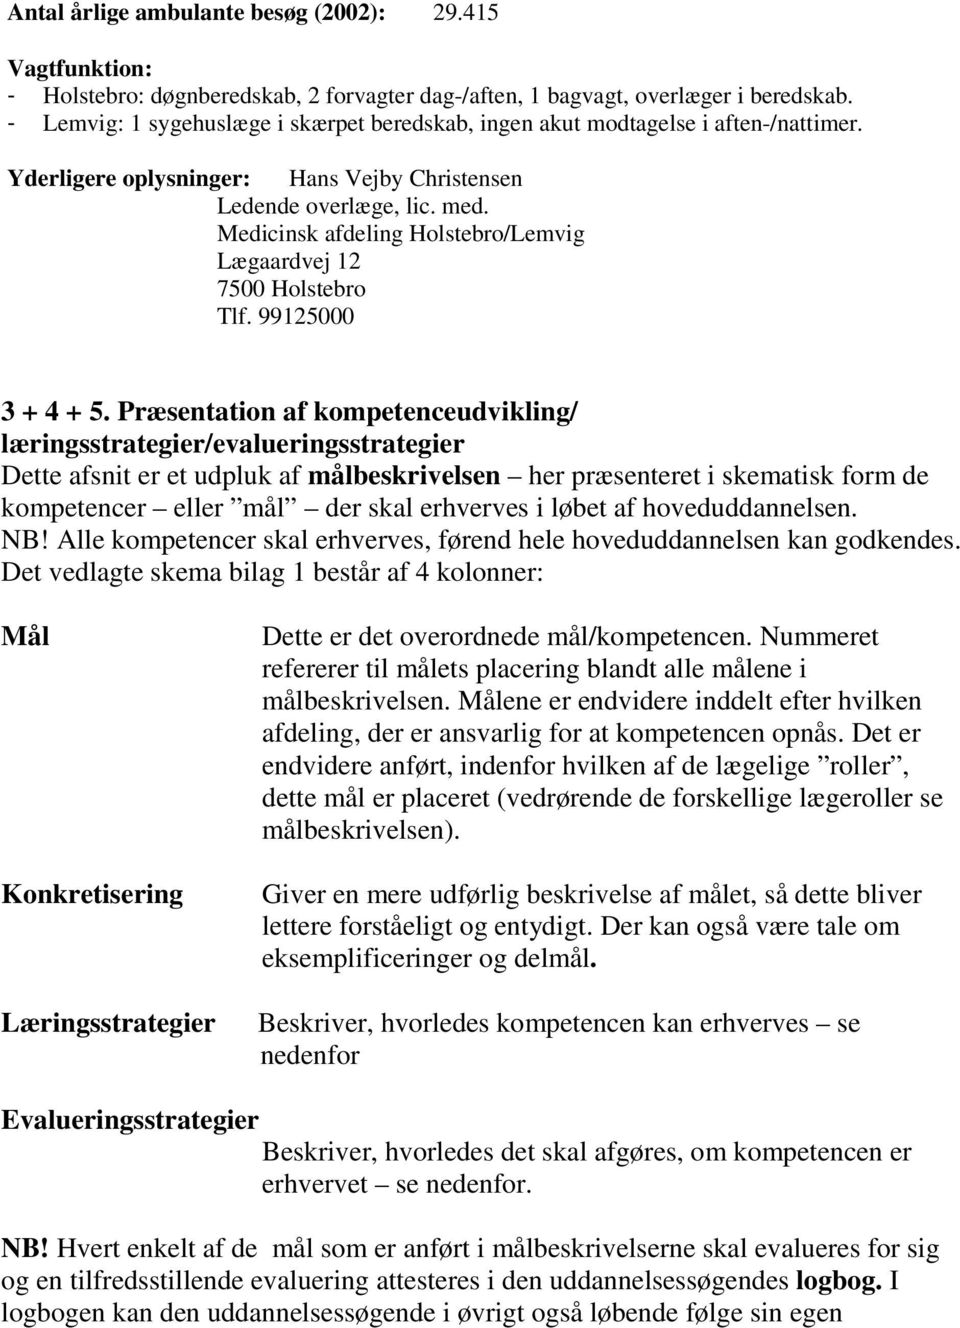 Medicinsk afdeling Holstebro/Lemvig Lægaardvej 12 7500 Holstebro Tlf. 99125000 3 + 4 + 5.